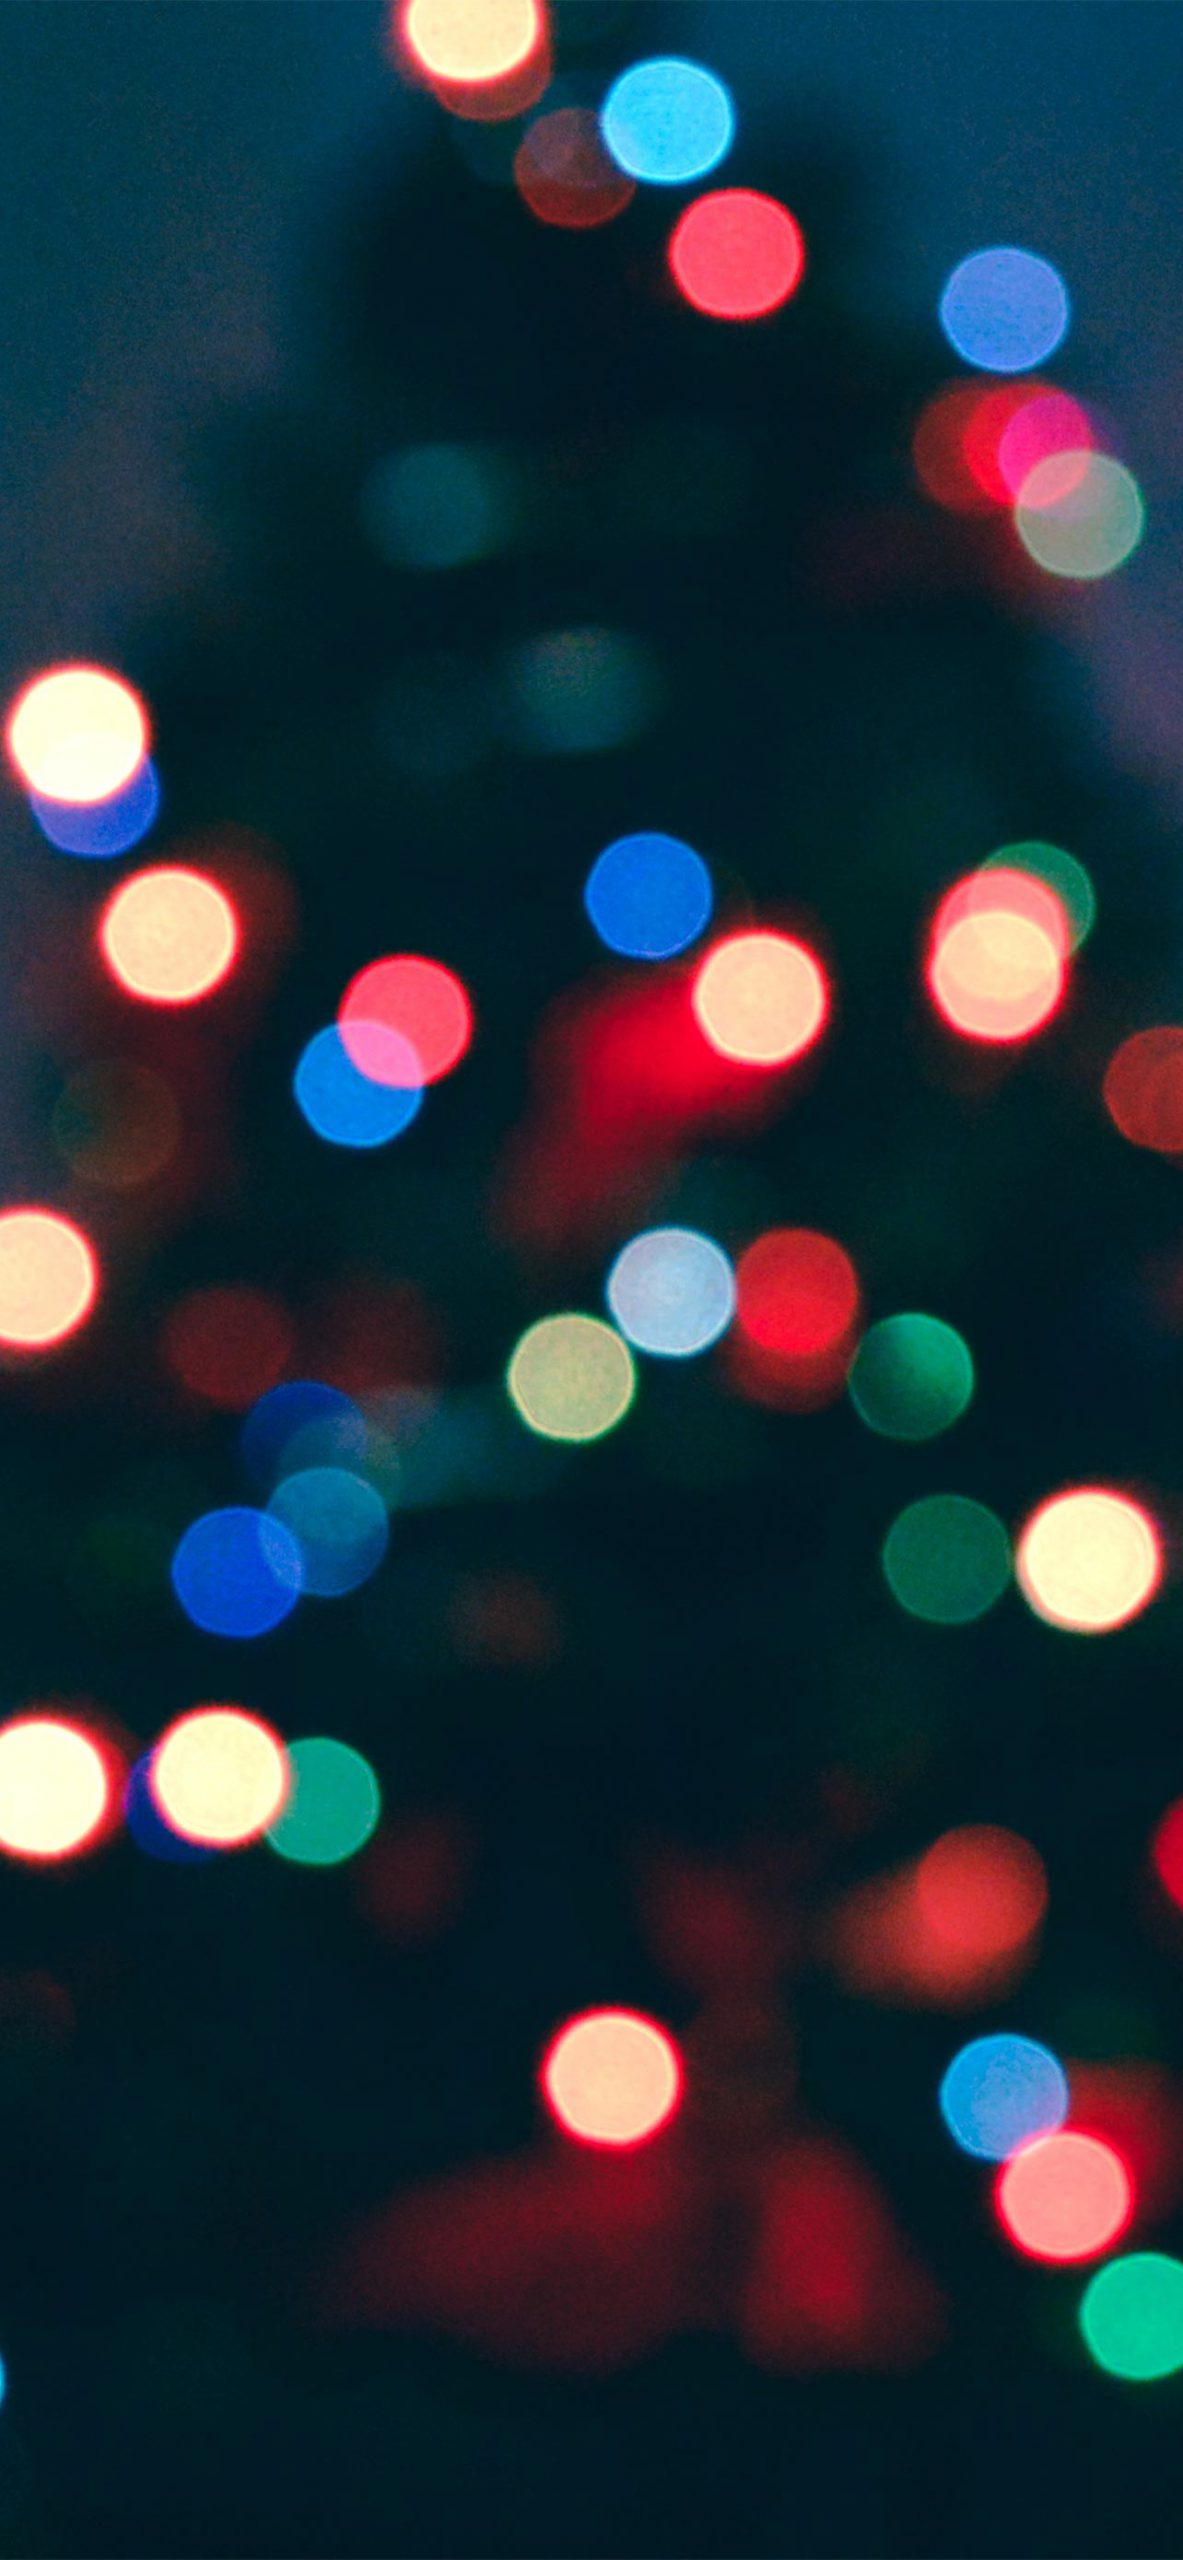 Hình nền Giáng sinh cho iPhone 13 Pro Max chắc chắn sẽ làm bạn cảm thấy rực rỡ và ấm áp trong mùa lễ này. Với những hình ảnh tuyệt đẹp của các cây thông, quà tặng và những hình minh họa Giáng sinh, bạn sẽ thích thú khi tải xuống những bức ảnh này cho điện thoại của mình. 